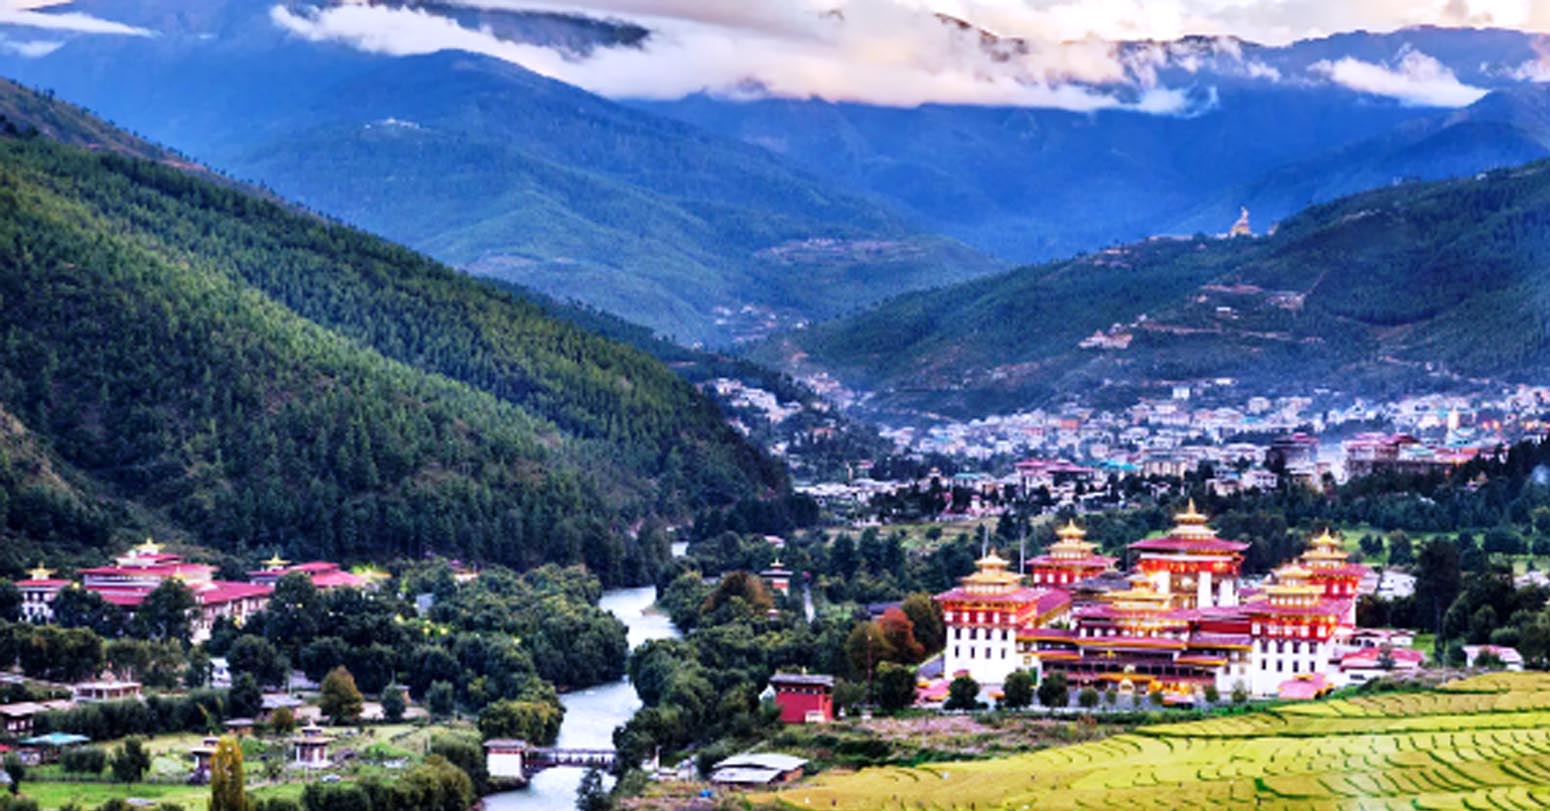 विदेशी पर्यटकका लागि भुुटान खुलाः नेपाली पर्यटकलाई मह, बेसार र सिमकार्डसहित स्वागत